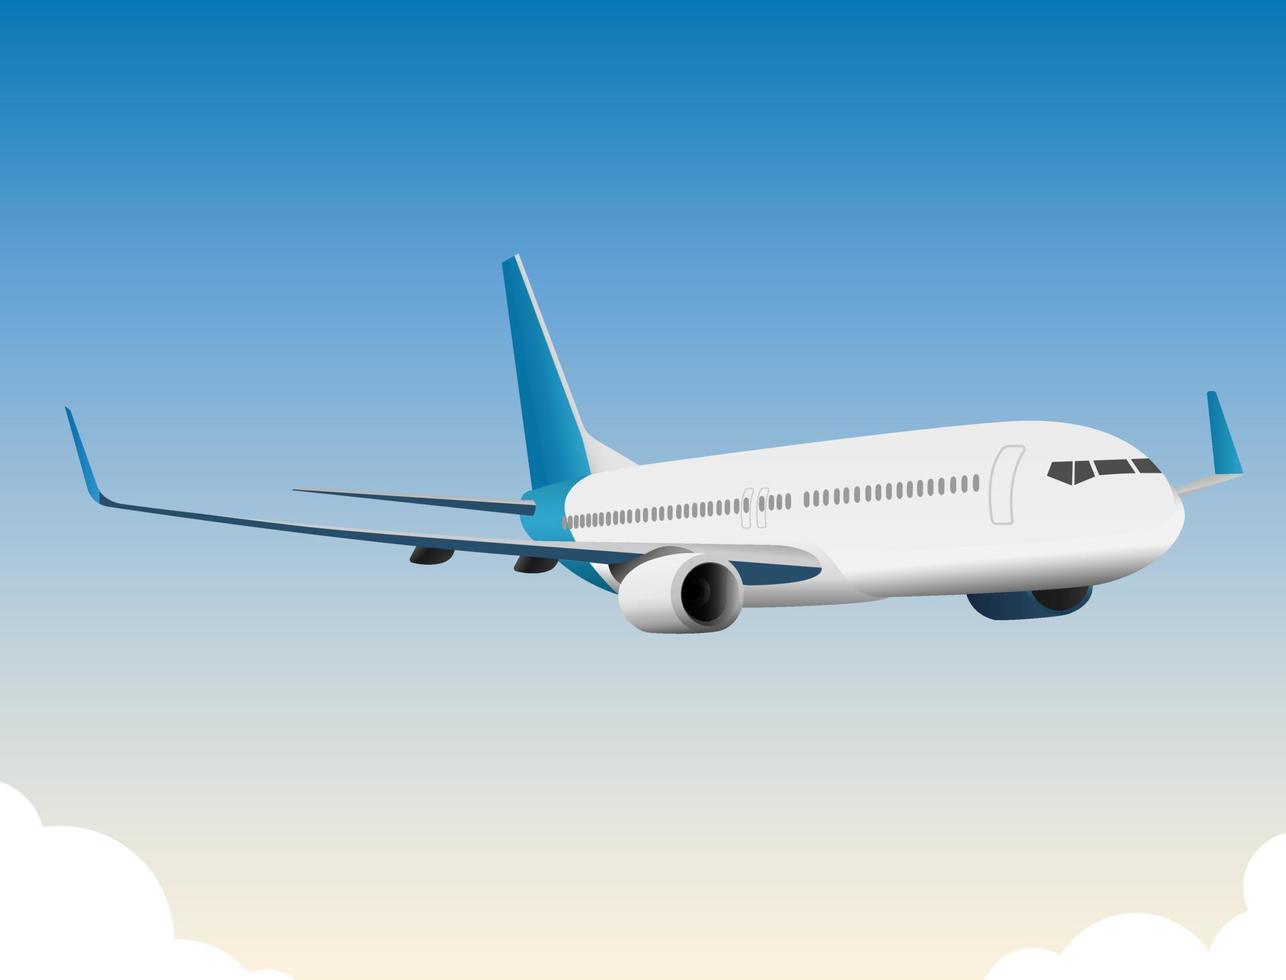 Flugzeug mit blauem Heck, das unter blauem Himmel fliegt vektor